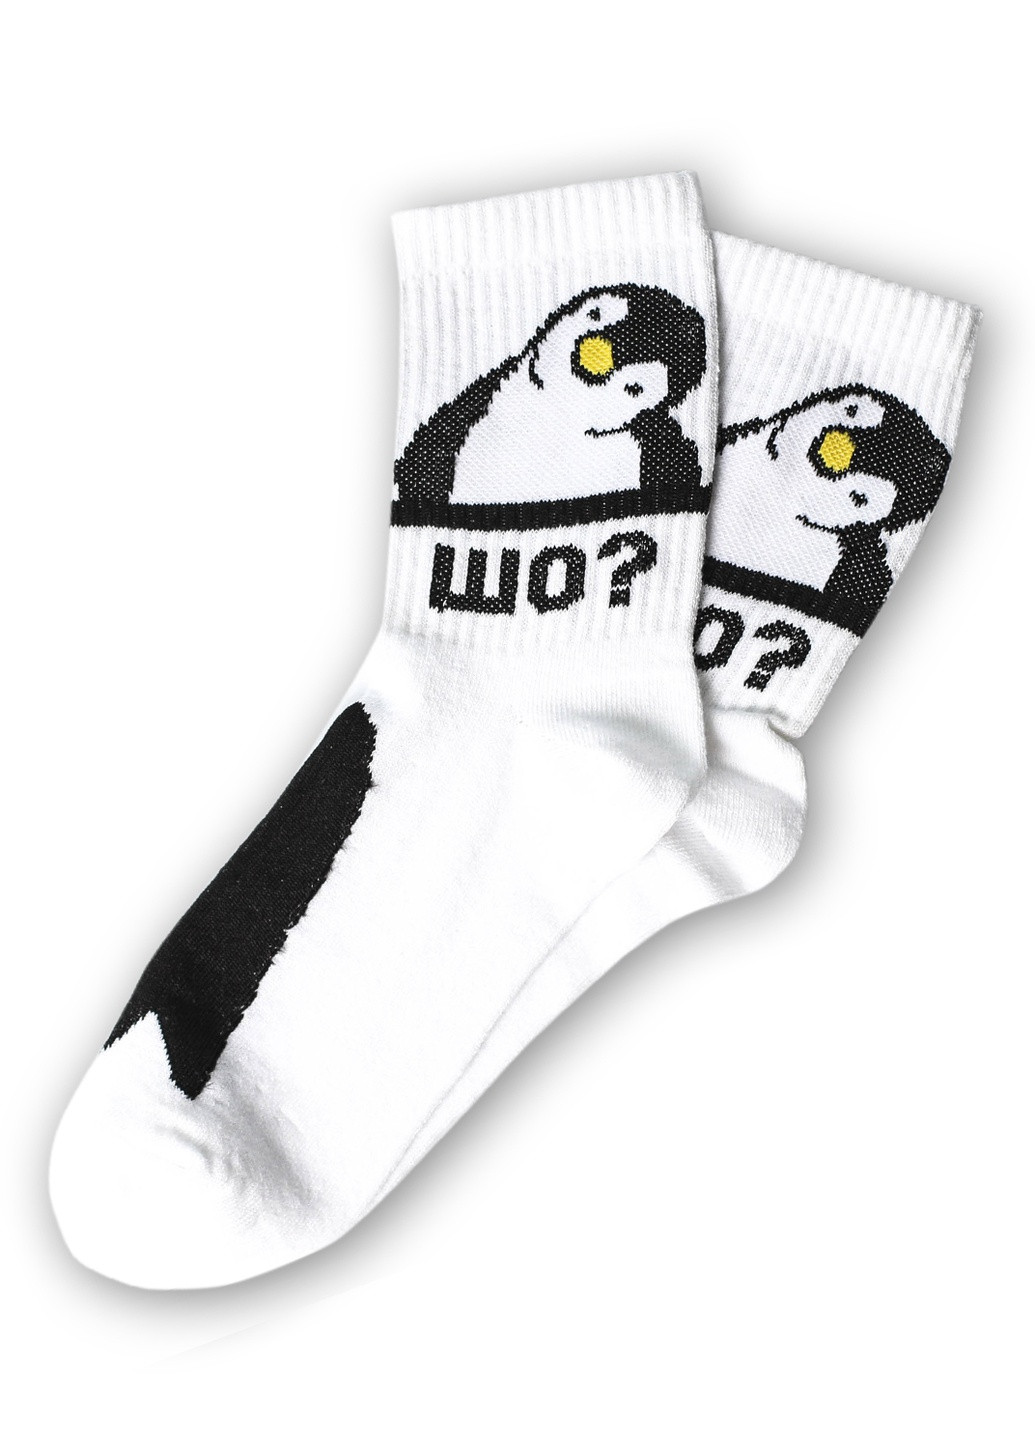 Шкарпетки Пінгвін. шо Rock'n'socks высокие (211258863)